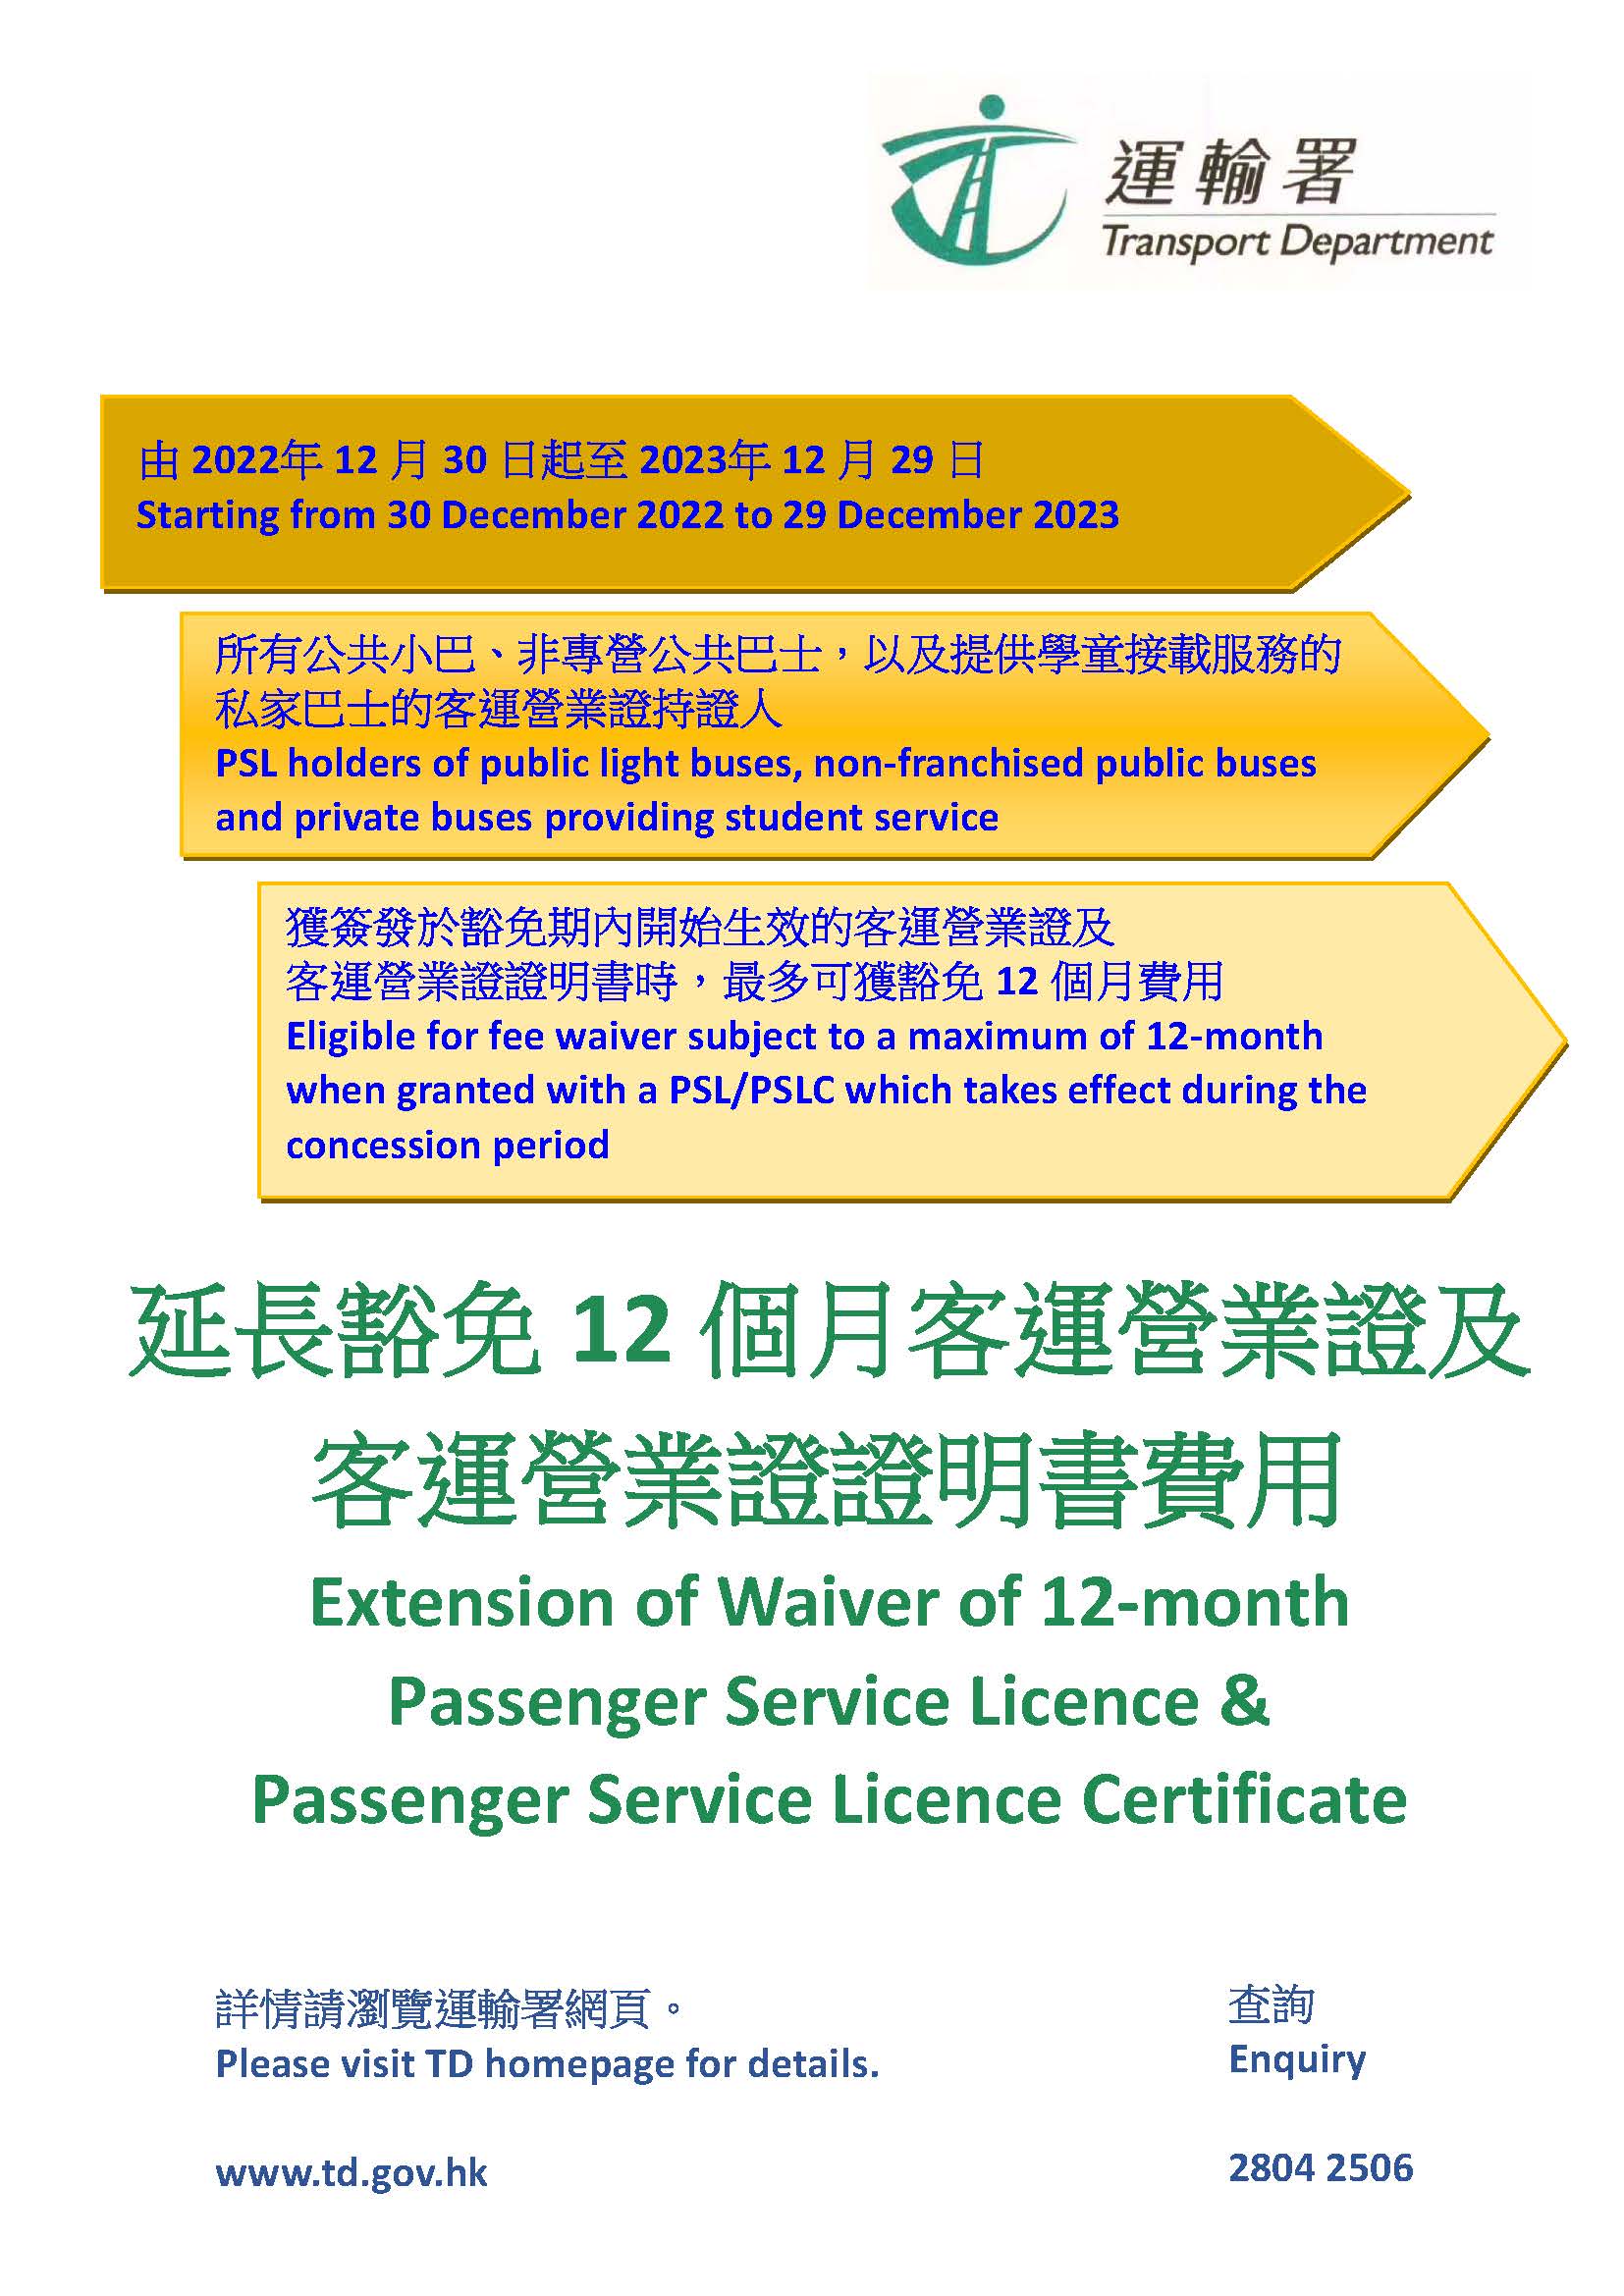 延長豁免12個月客運營業證及客運營業證證明書收費